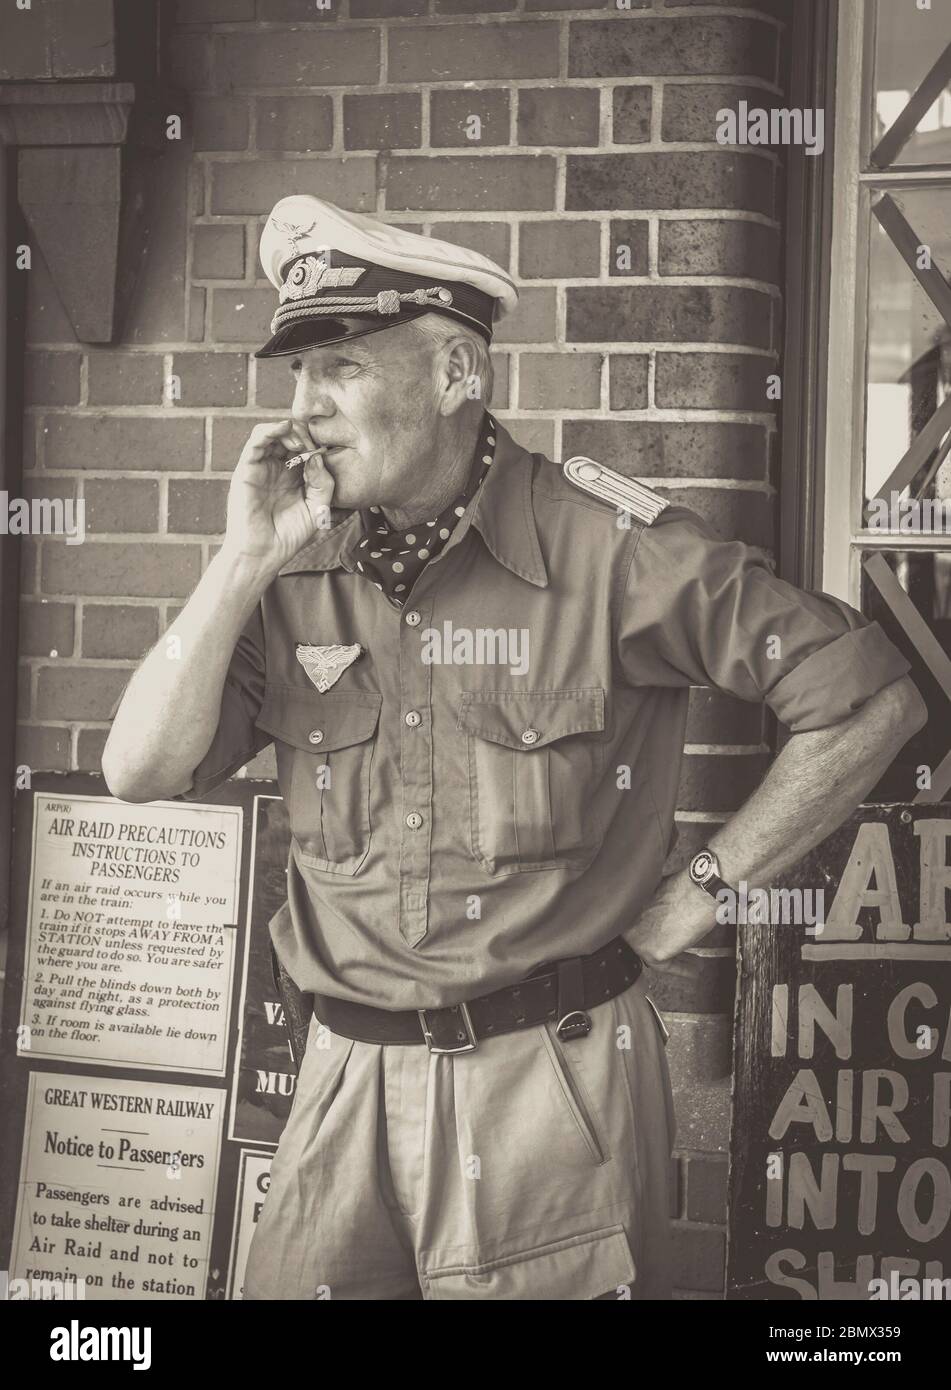 Monochrom, Schwarzweiß, Nahaufnahme des Offiziers der deutschen Luftwaffe im Vintage-Bahnhof, Severn Valley Railway Sommerveranstaltung der 1940er Jahre, Großbritannien. Stockfoto